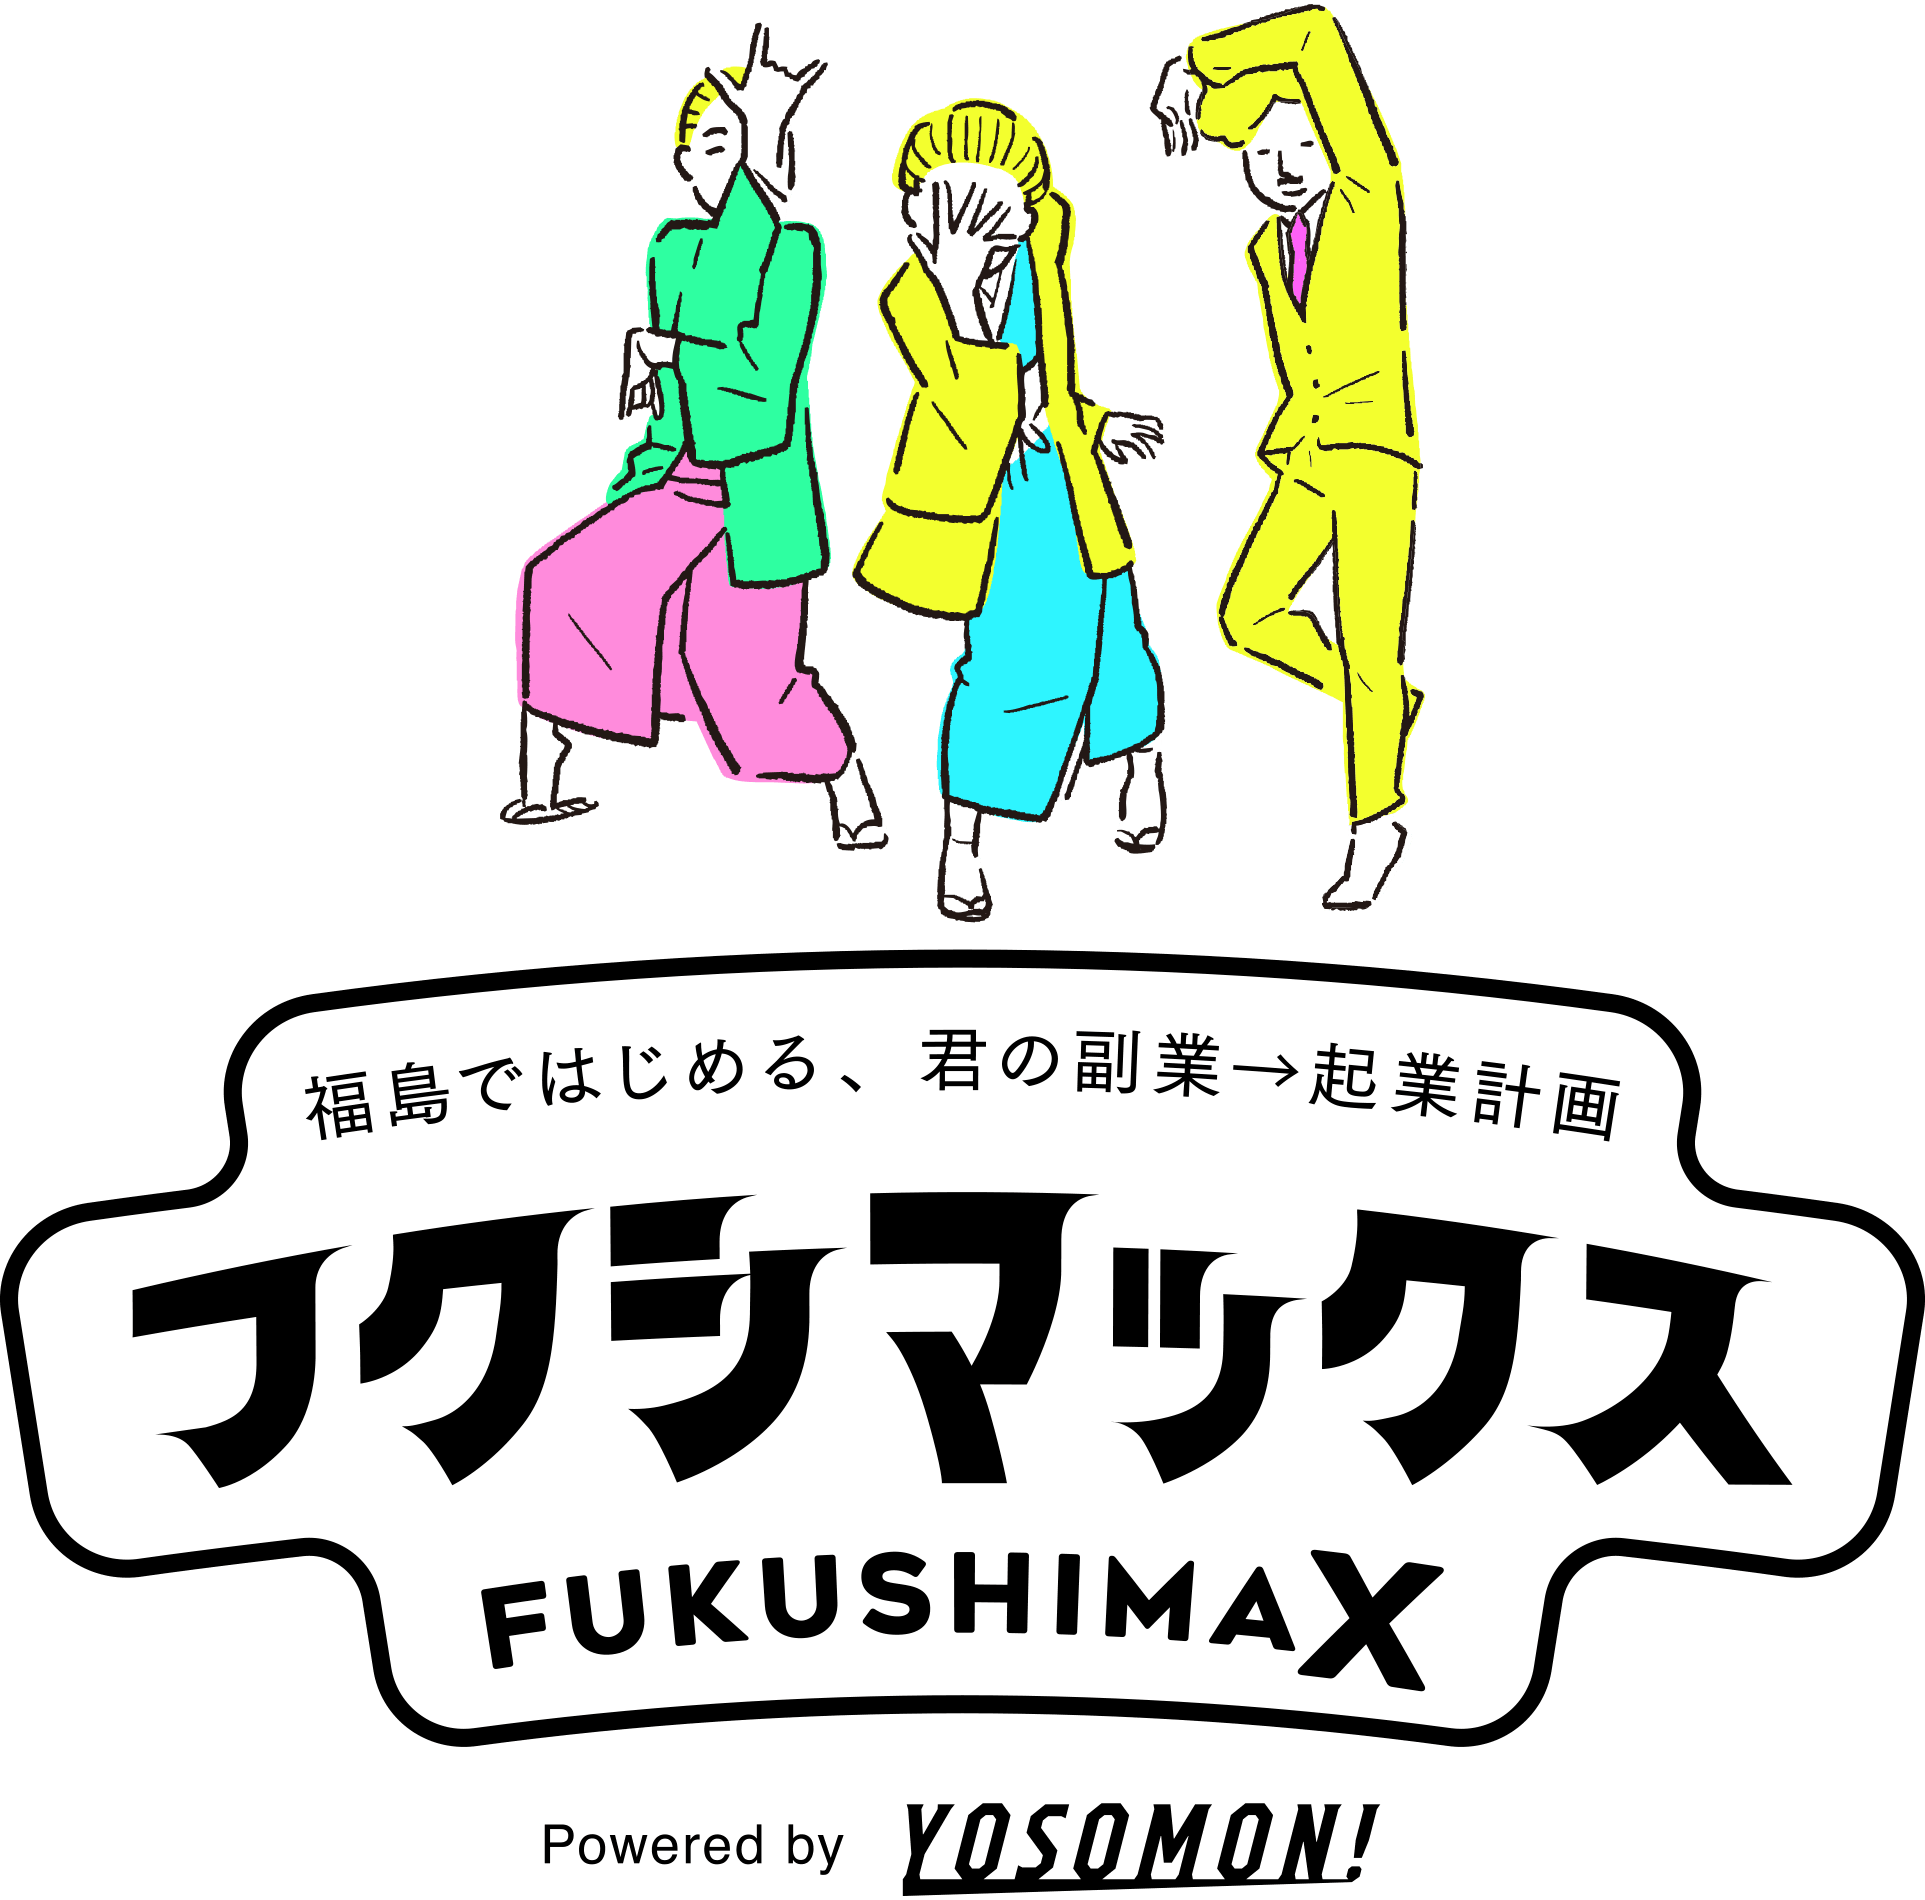 福島ではじめる、君の副業→起業計画「フクシマックス FUKUSHIMAX」